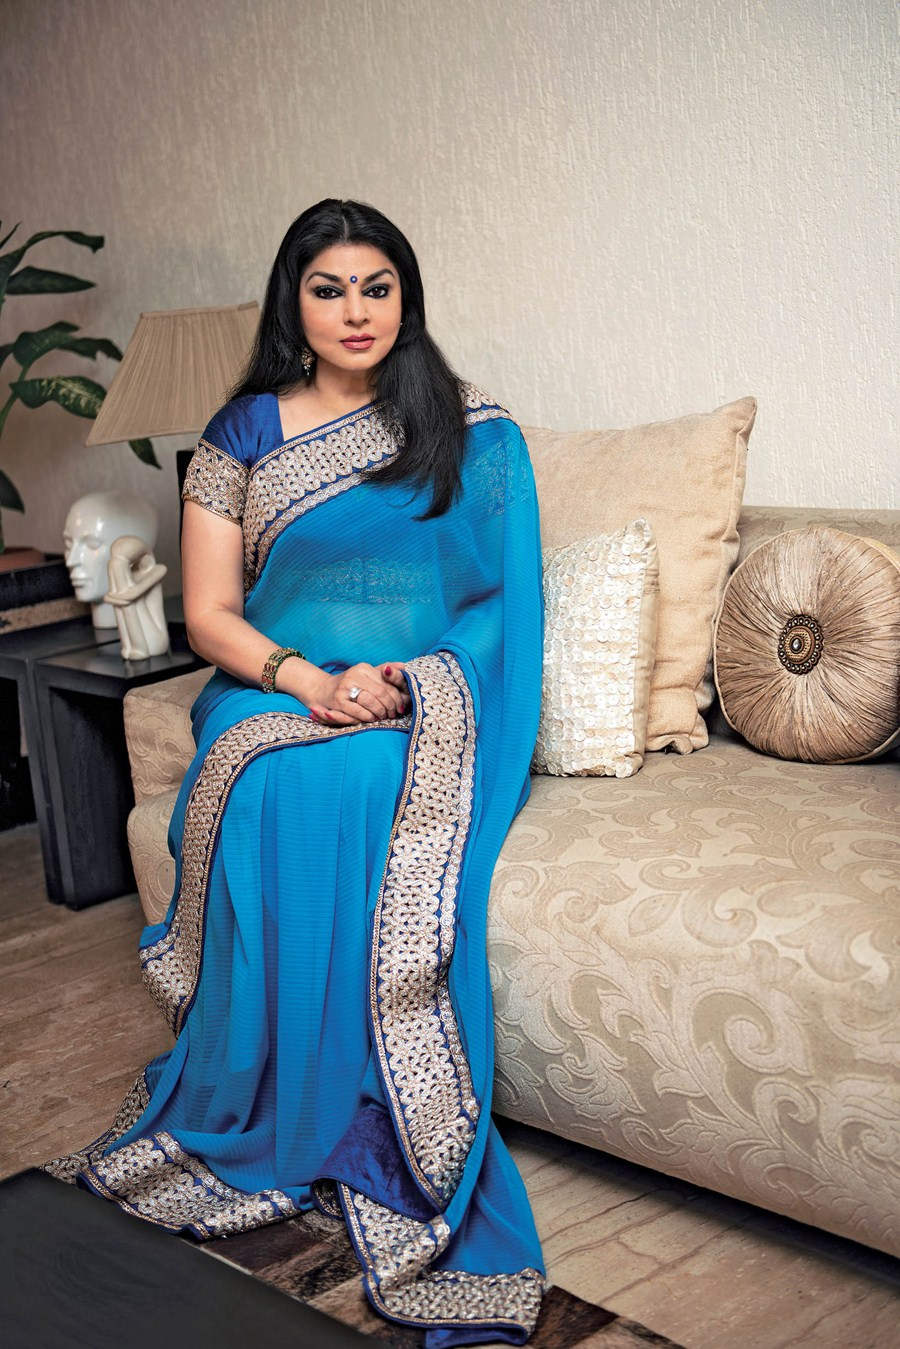 Kiran Juneja In Blue Saree